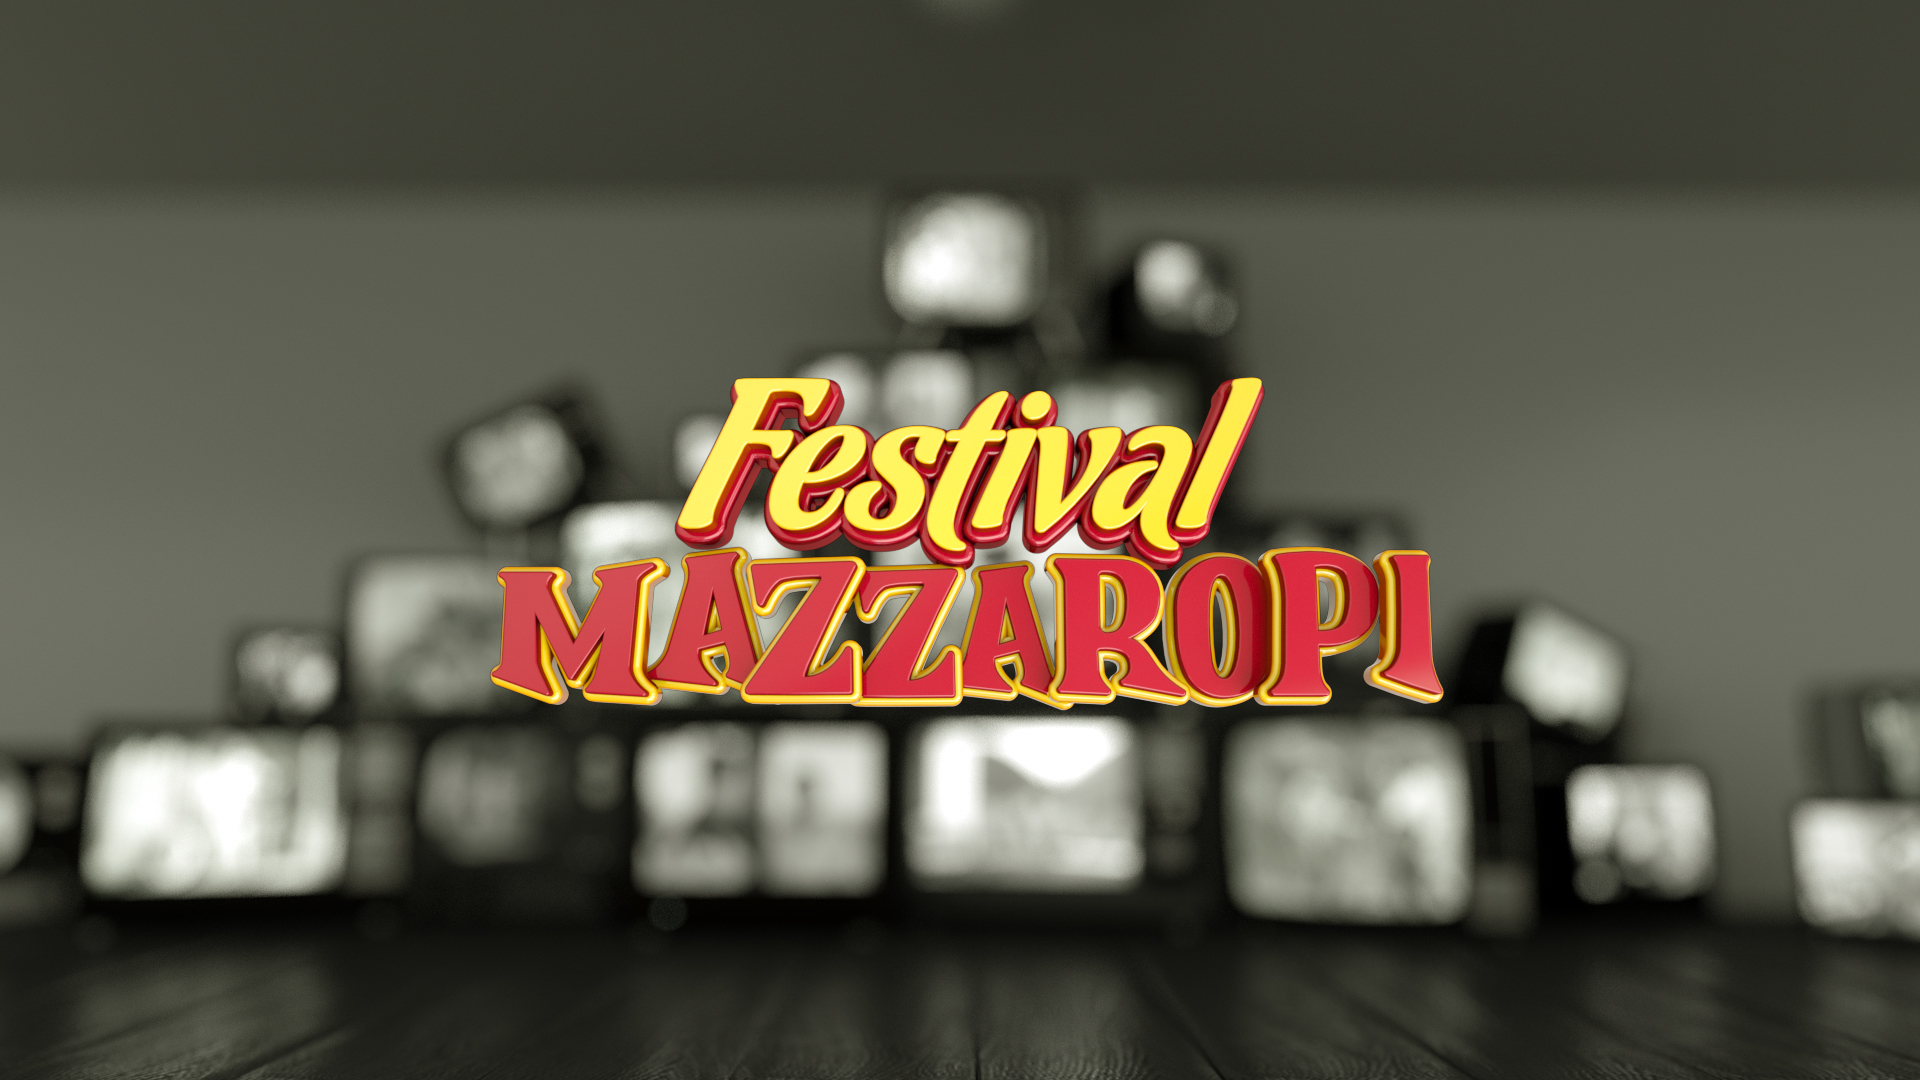 Festival Mazzaropi: TV Aparecida exibe o filme "Nadando em Dinheiro" nesta quarta-feira 41